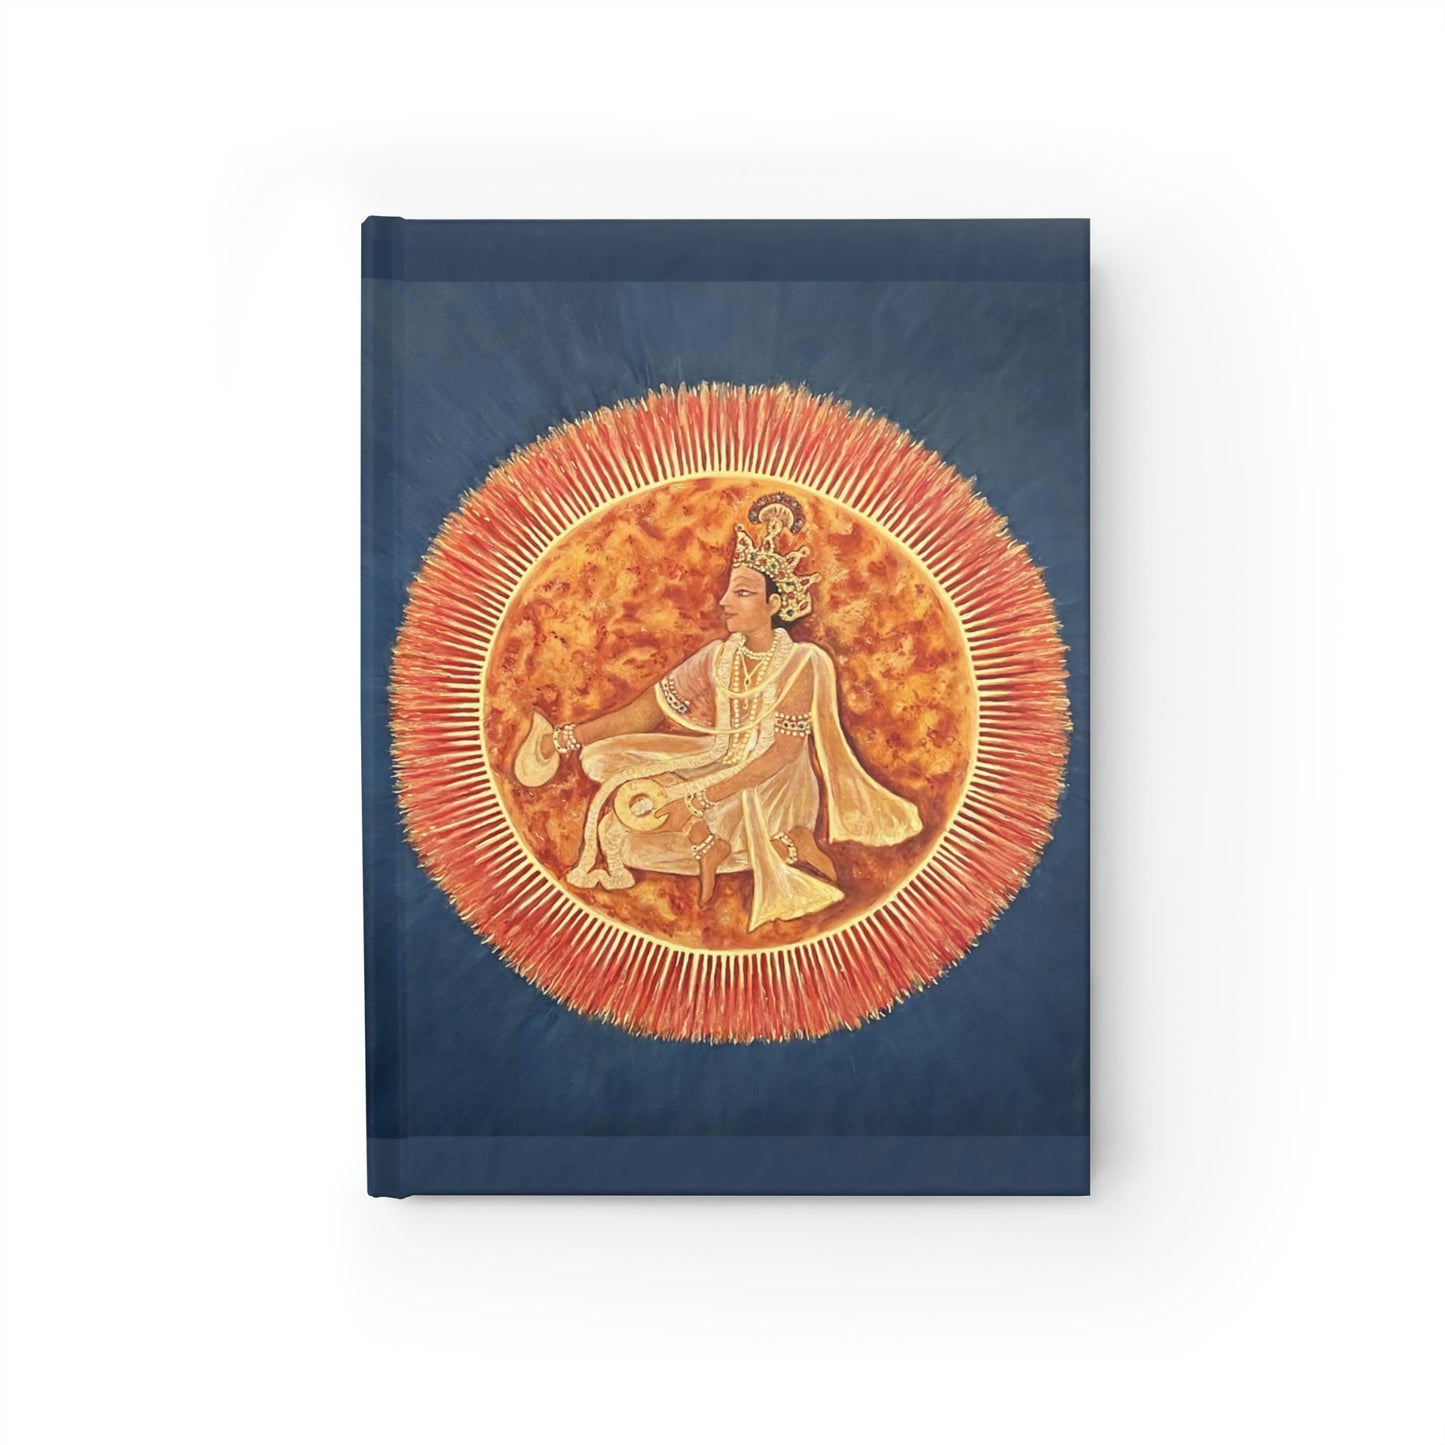 Surya, The Sun God, Journal - Ruled Line